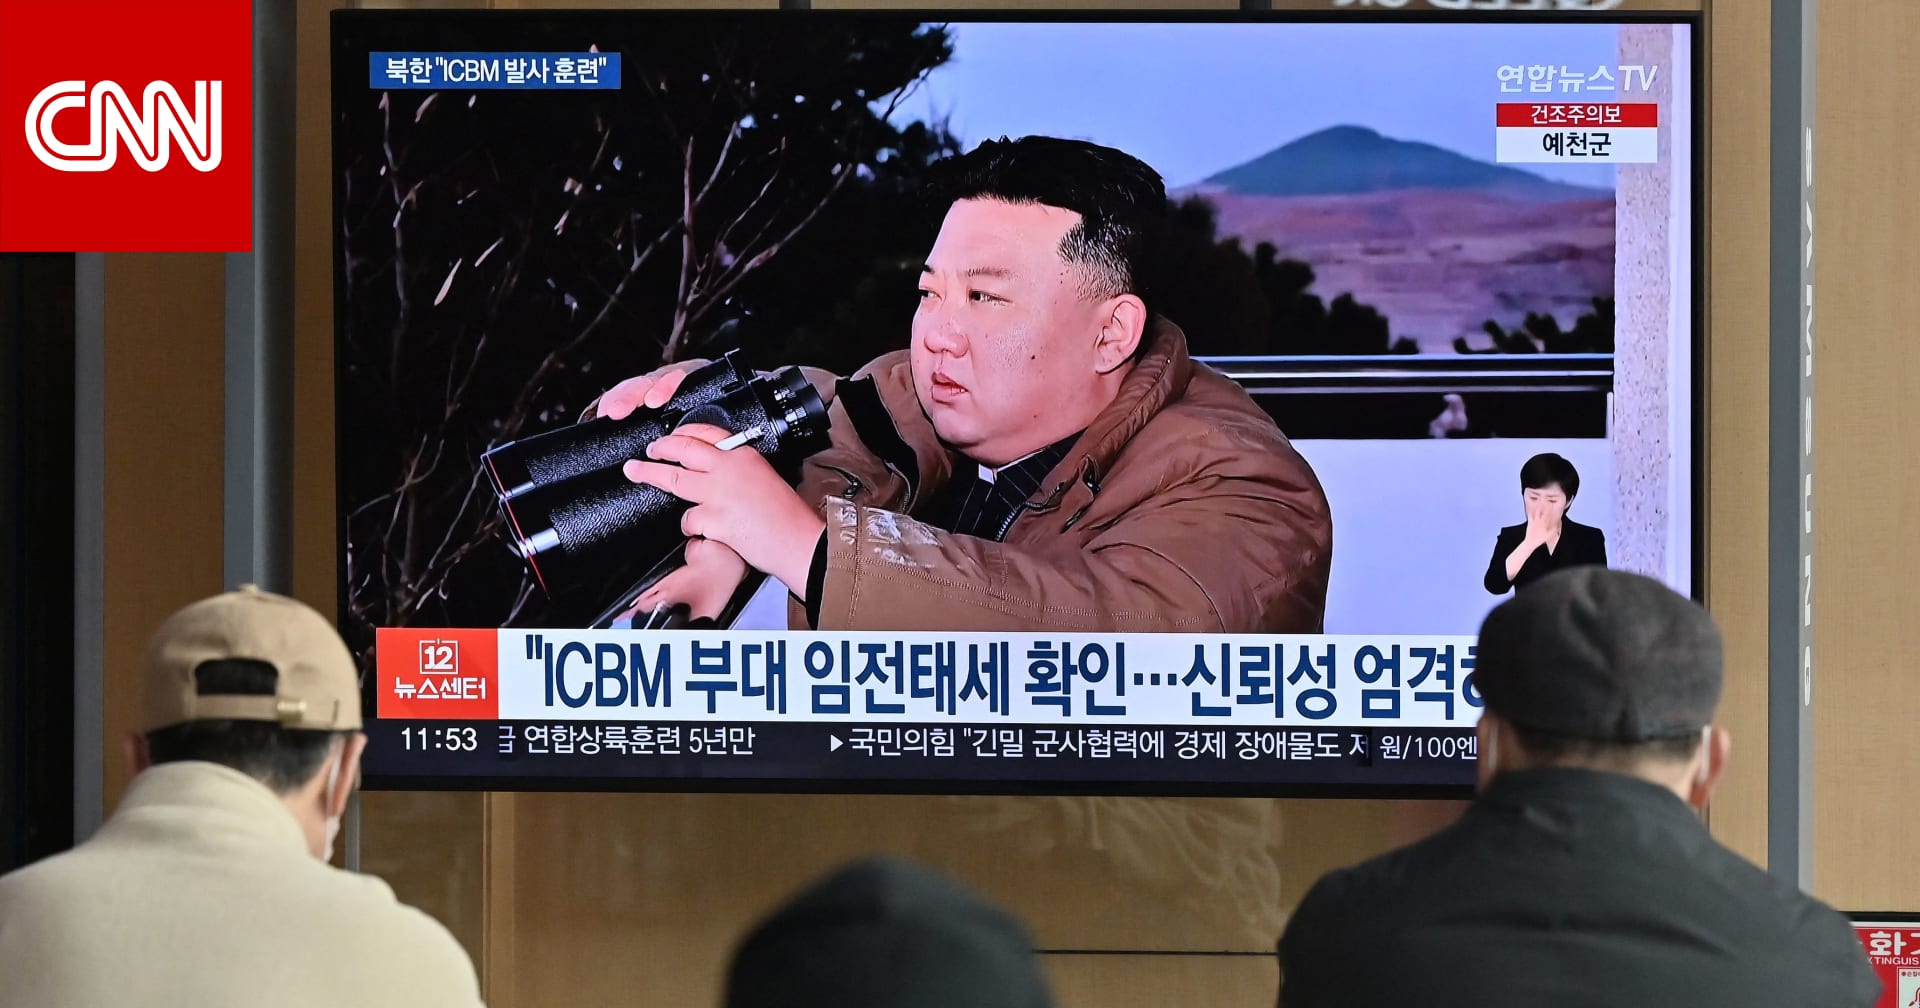 كوريا الشمالية تعلن اختبار “سلاح نووي استراتيجي جديد” تحت الماء